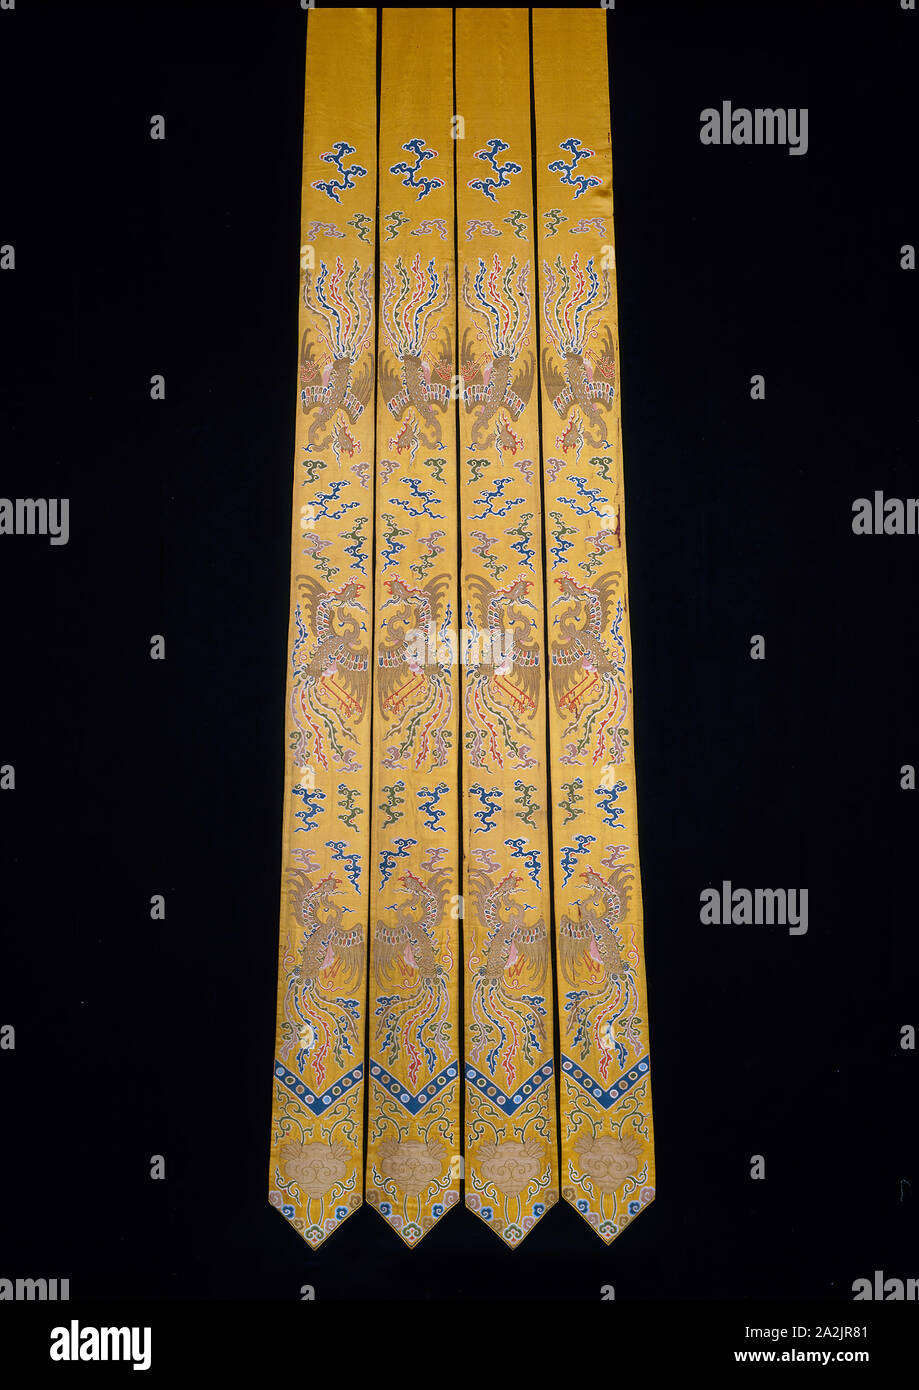 Pendenti (per letto tende), dinastia Qing(1644-1911), 1736/95, mancesi, Cina, seta, oro-foglia-over-laccato-le strisce di carta e a foglia d'oro-over-laccato-carta-strip-avvolto di seta, warp-galleggiante di fronte 7:1 raso con brocading complementare trame legato in trama-galleggiante di fronte 1:3 'S' twill interlacciature un: 270,3 × 19,2 cm (106 3/8 × 7 1/2 in Foto Stock